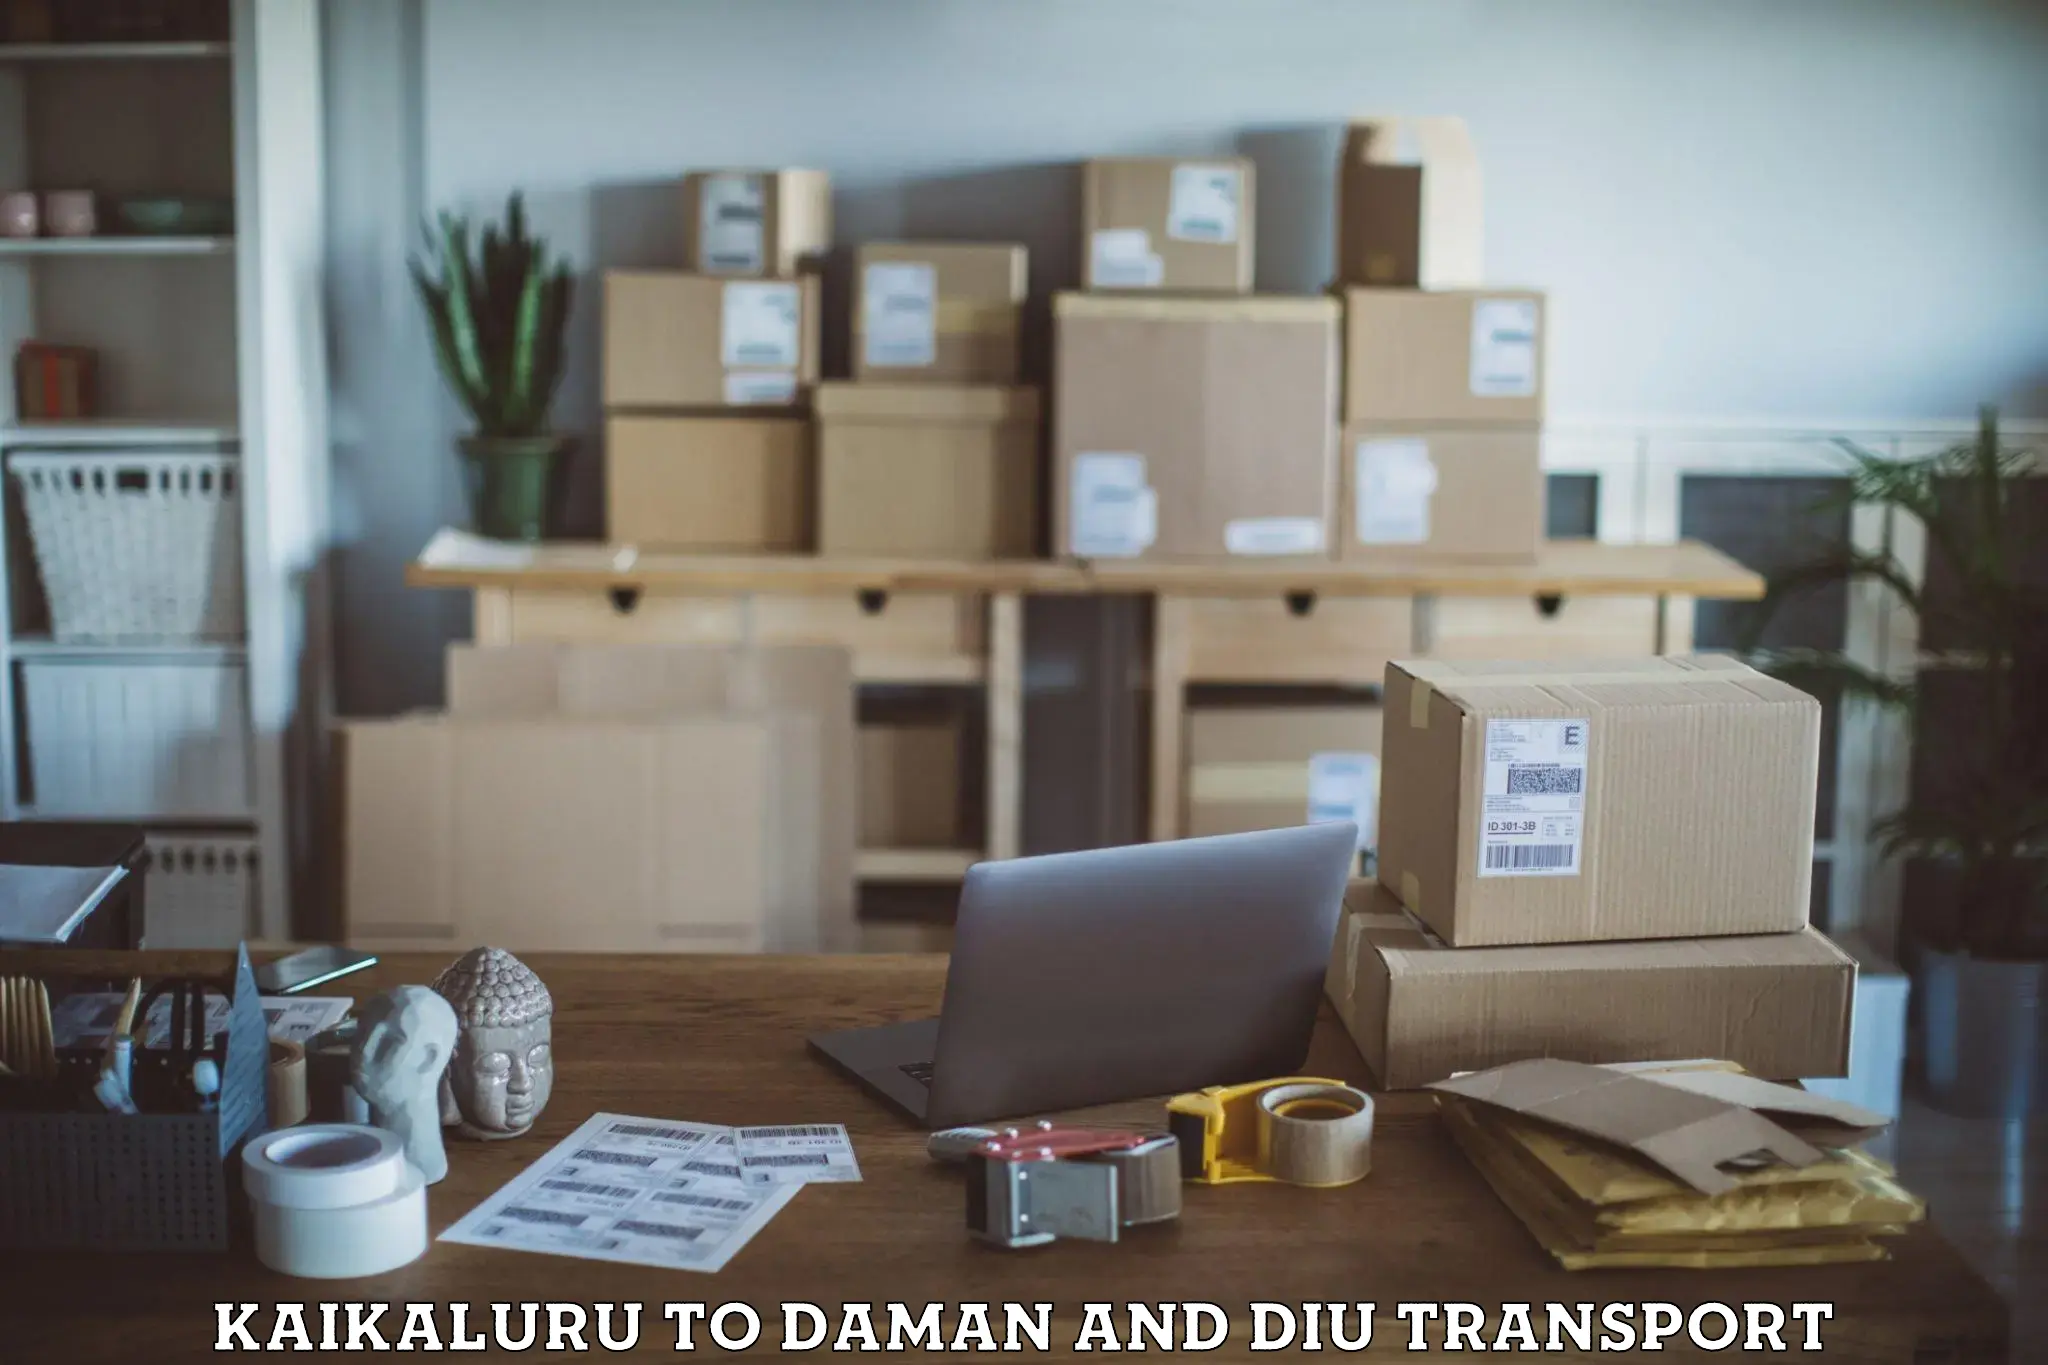 Transport in sharing Kaikaluru to Diu